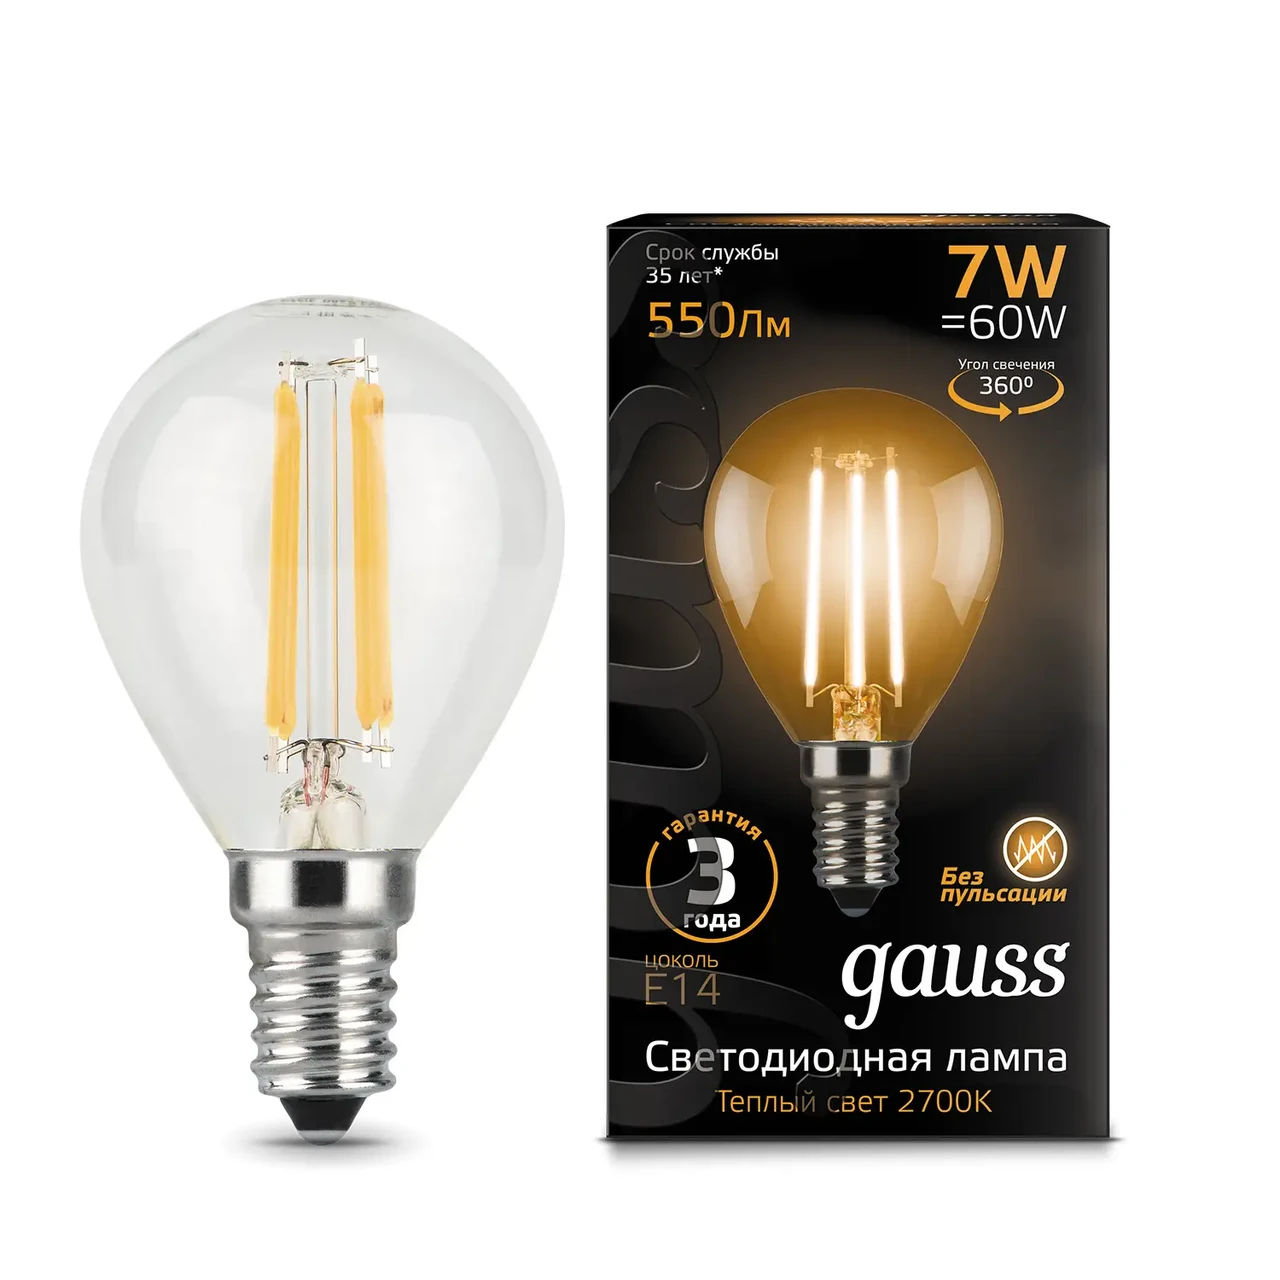 Лампа Gauss Filament Шар 7W 550lm 2700К Е14 LED 1/10/50, фото 1